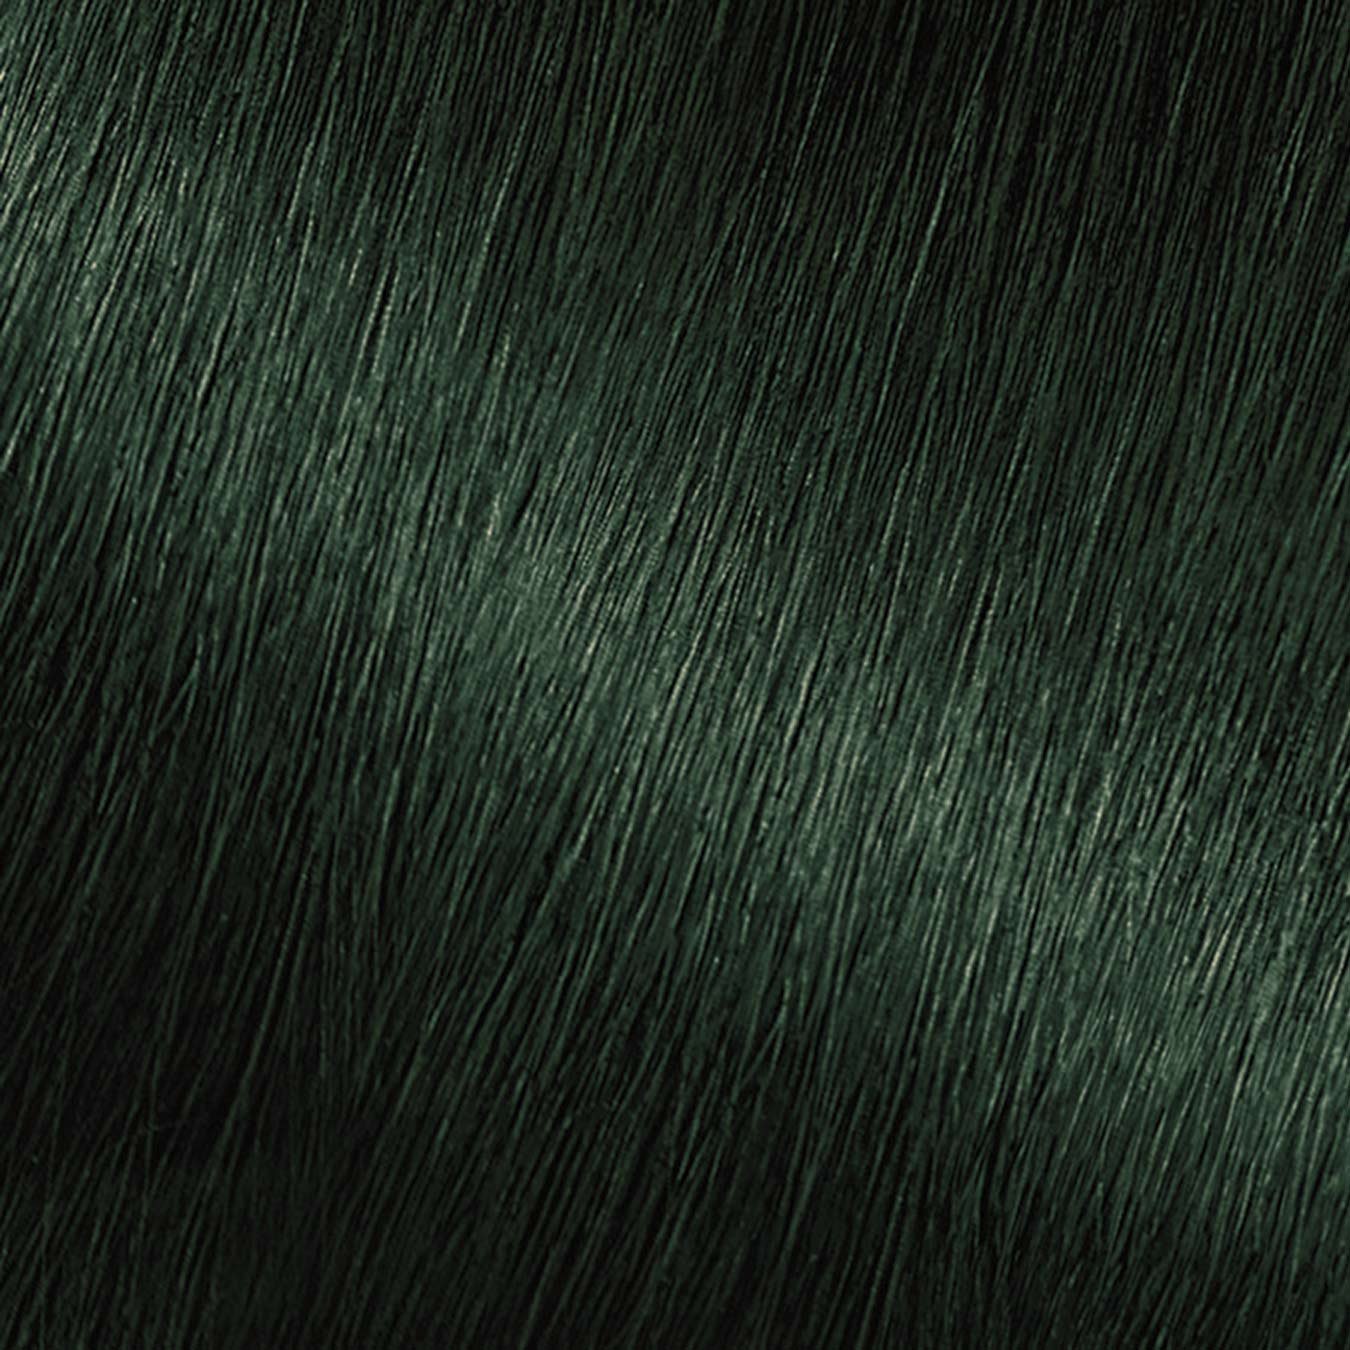 Hair Swatch of Nutrisse Ultra Color EM1 Dark Matcha.